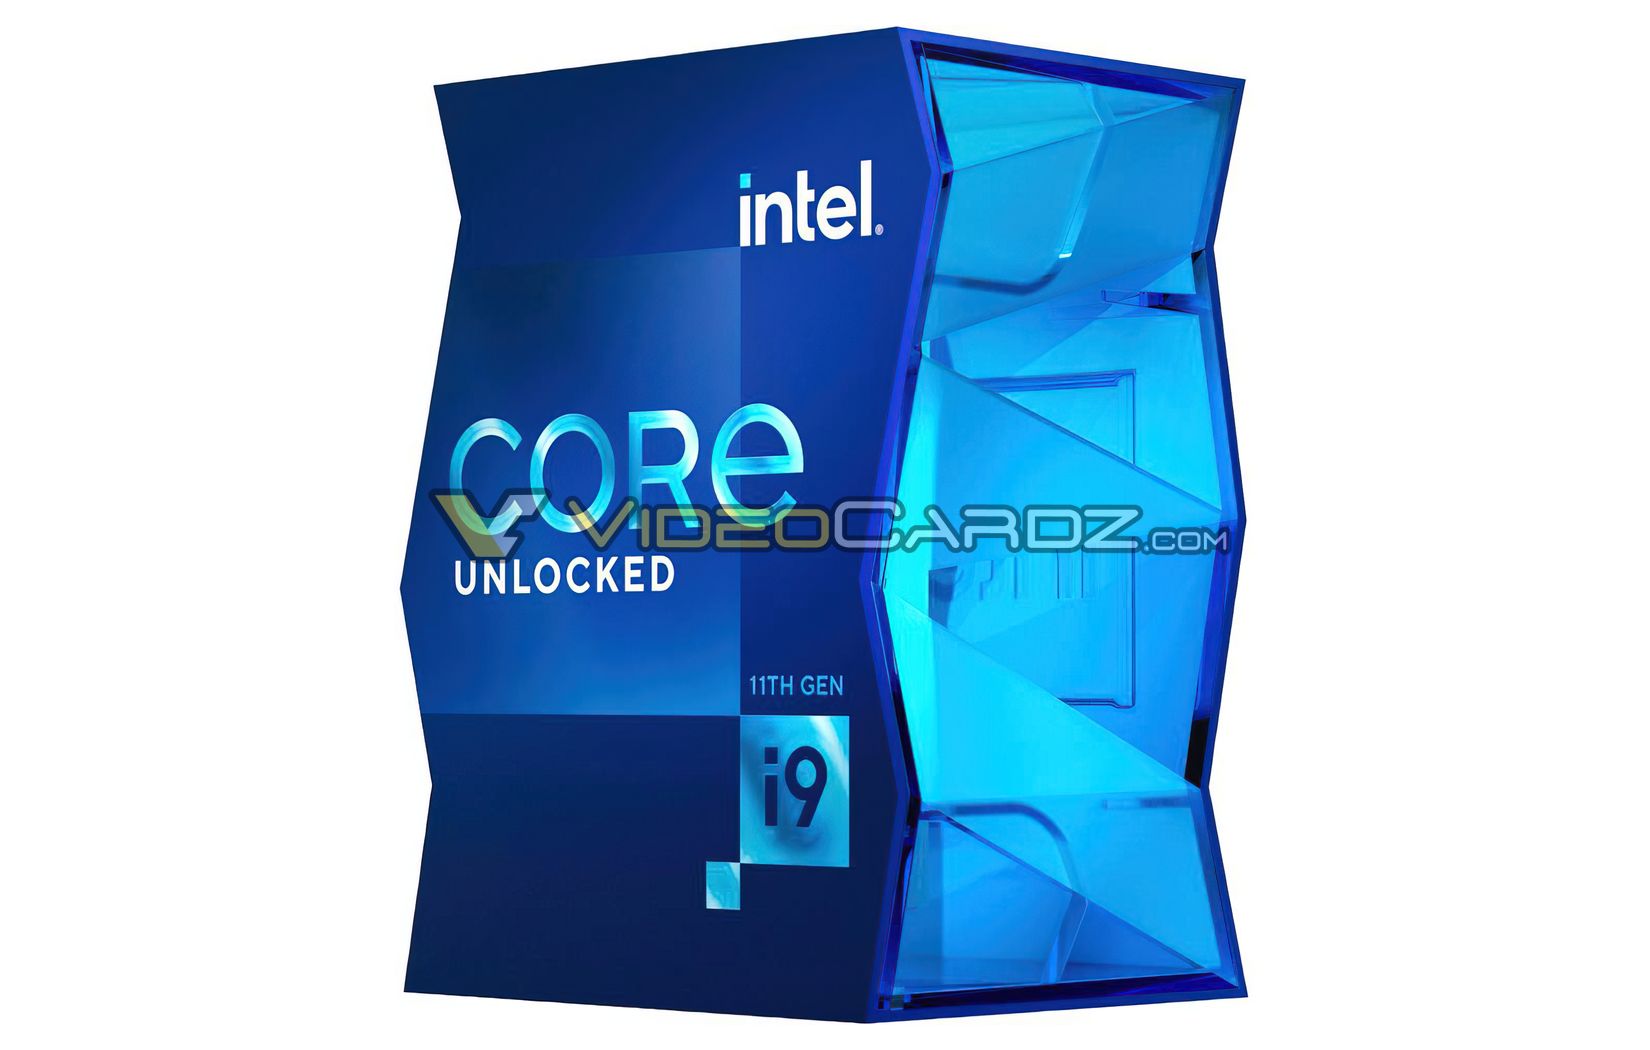 Hộp sản phẩm mới dành cho Intel Core i9-11900K (thế hệ 11) đẹp thật. Đổi mới về bao bì sản phẩm...